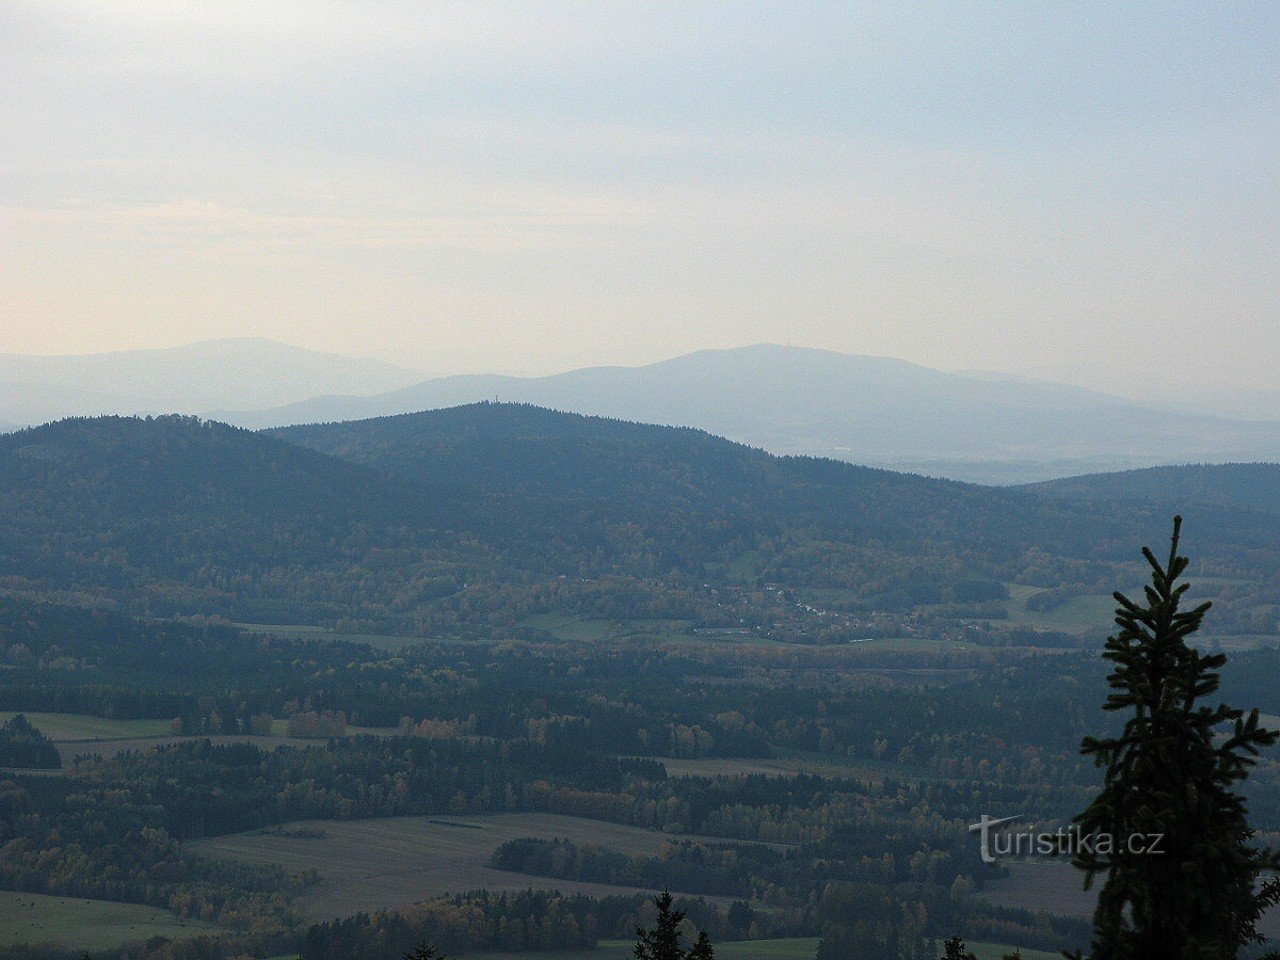 Slepíčí hory från Kráví hora (Kleť i bakgrunden)